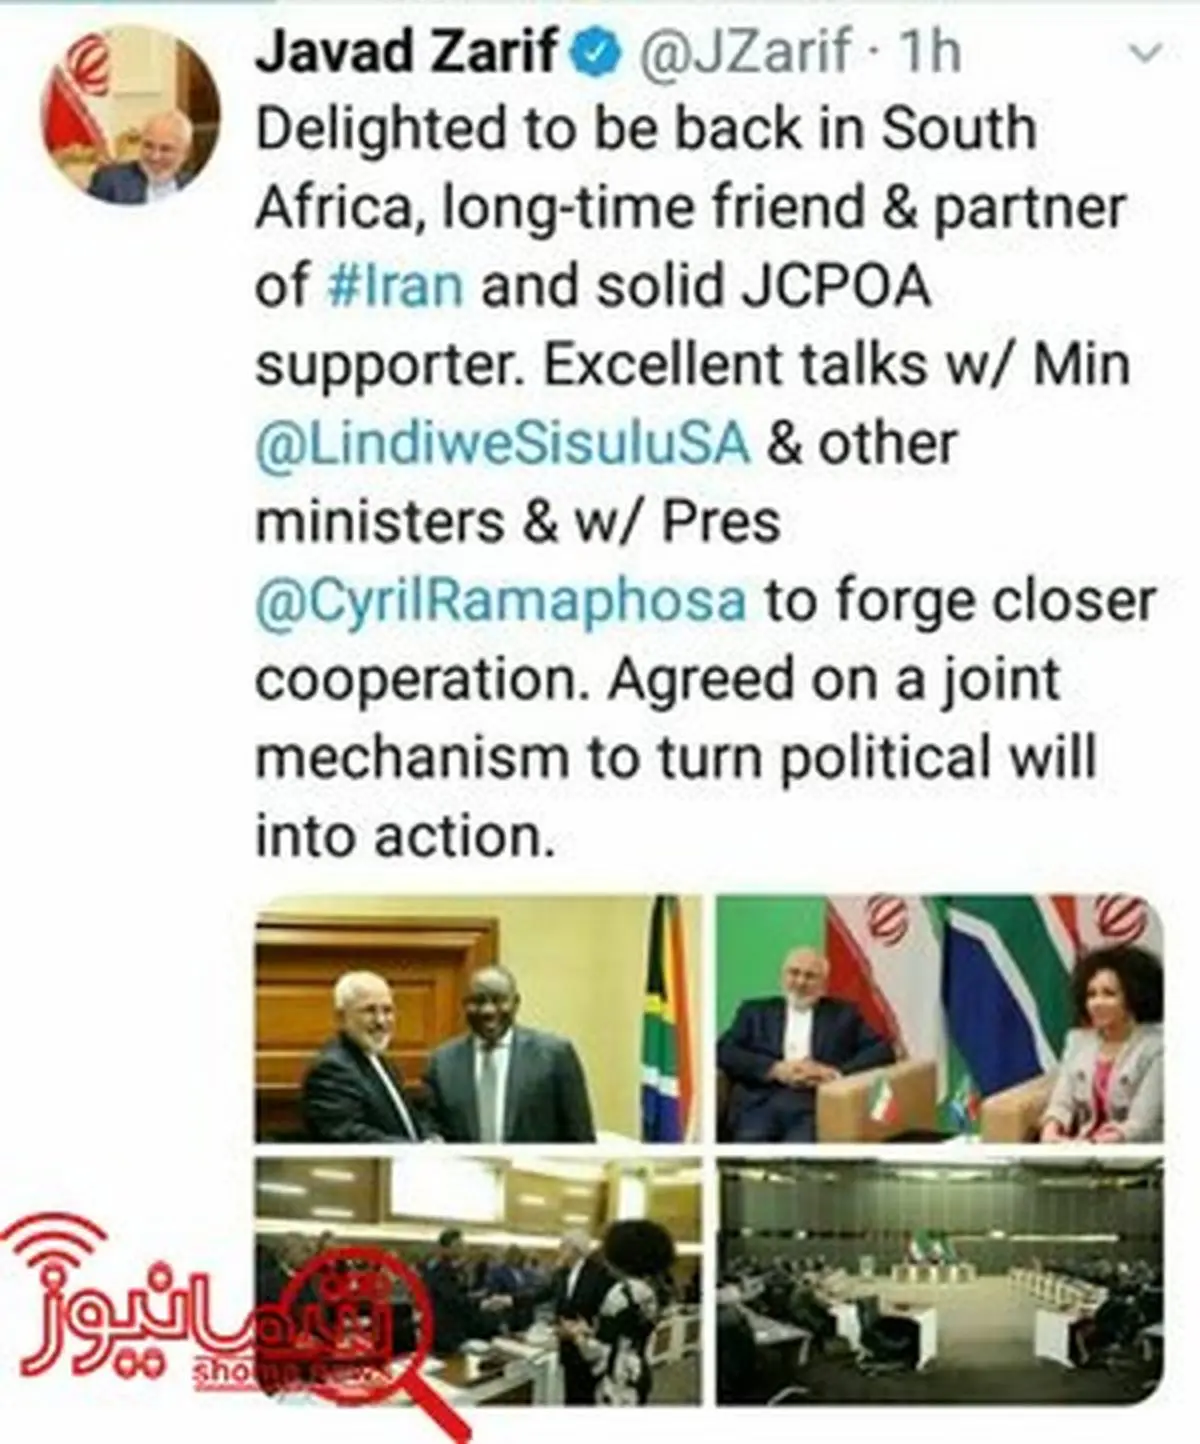 توافق ایران و آفریقای جنوبی بر روی یک سازوکار مشترک جهت گسترش روابط 2 کشور